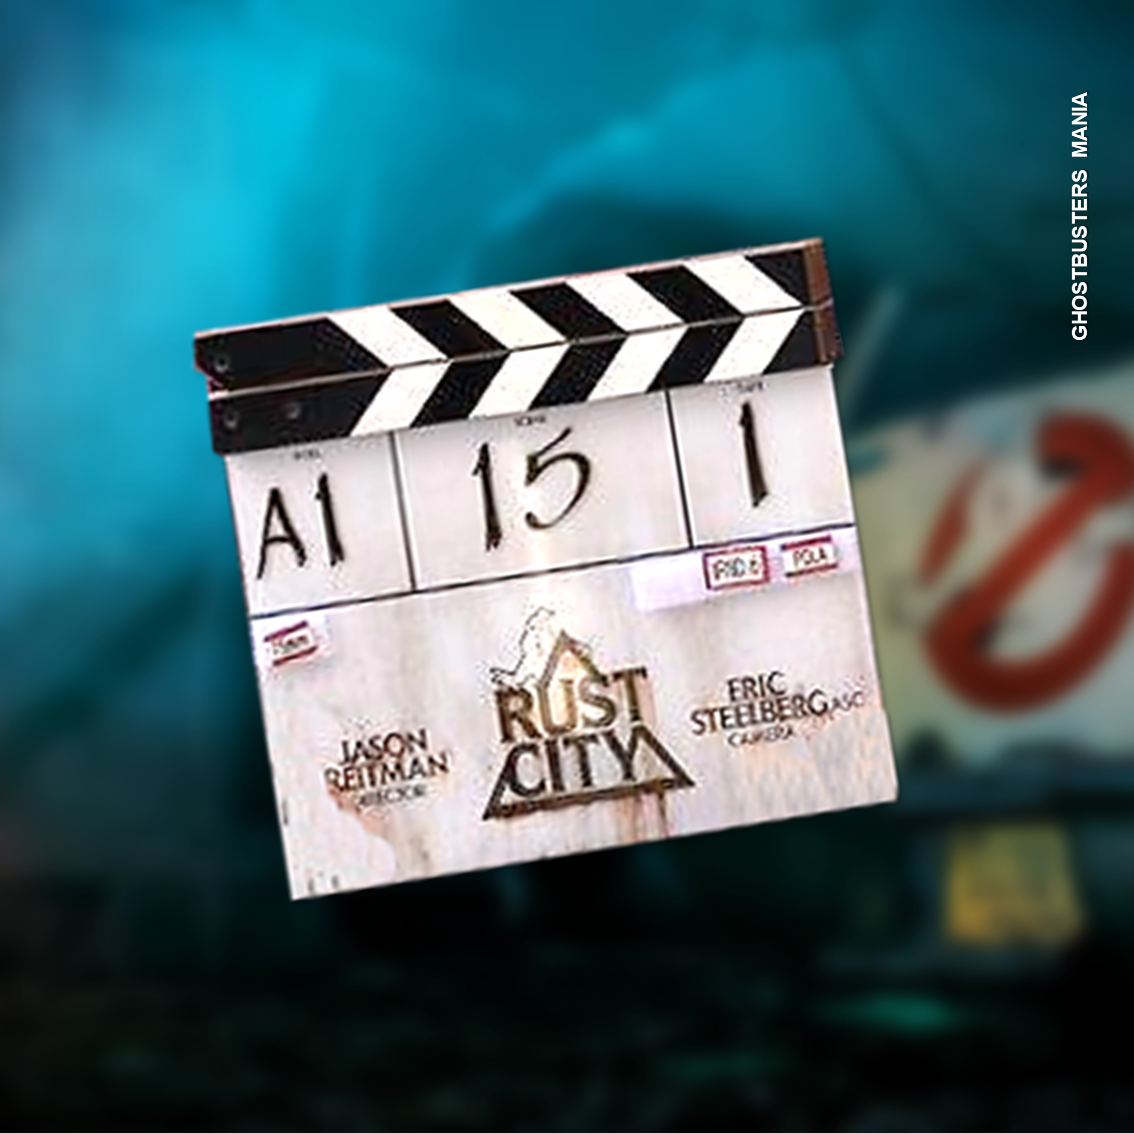 Ghostbusters 2020: Incontro con il cast e nuove location per le riprese